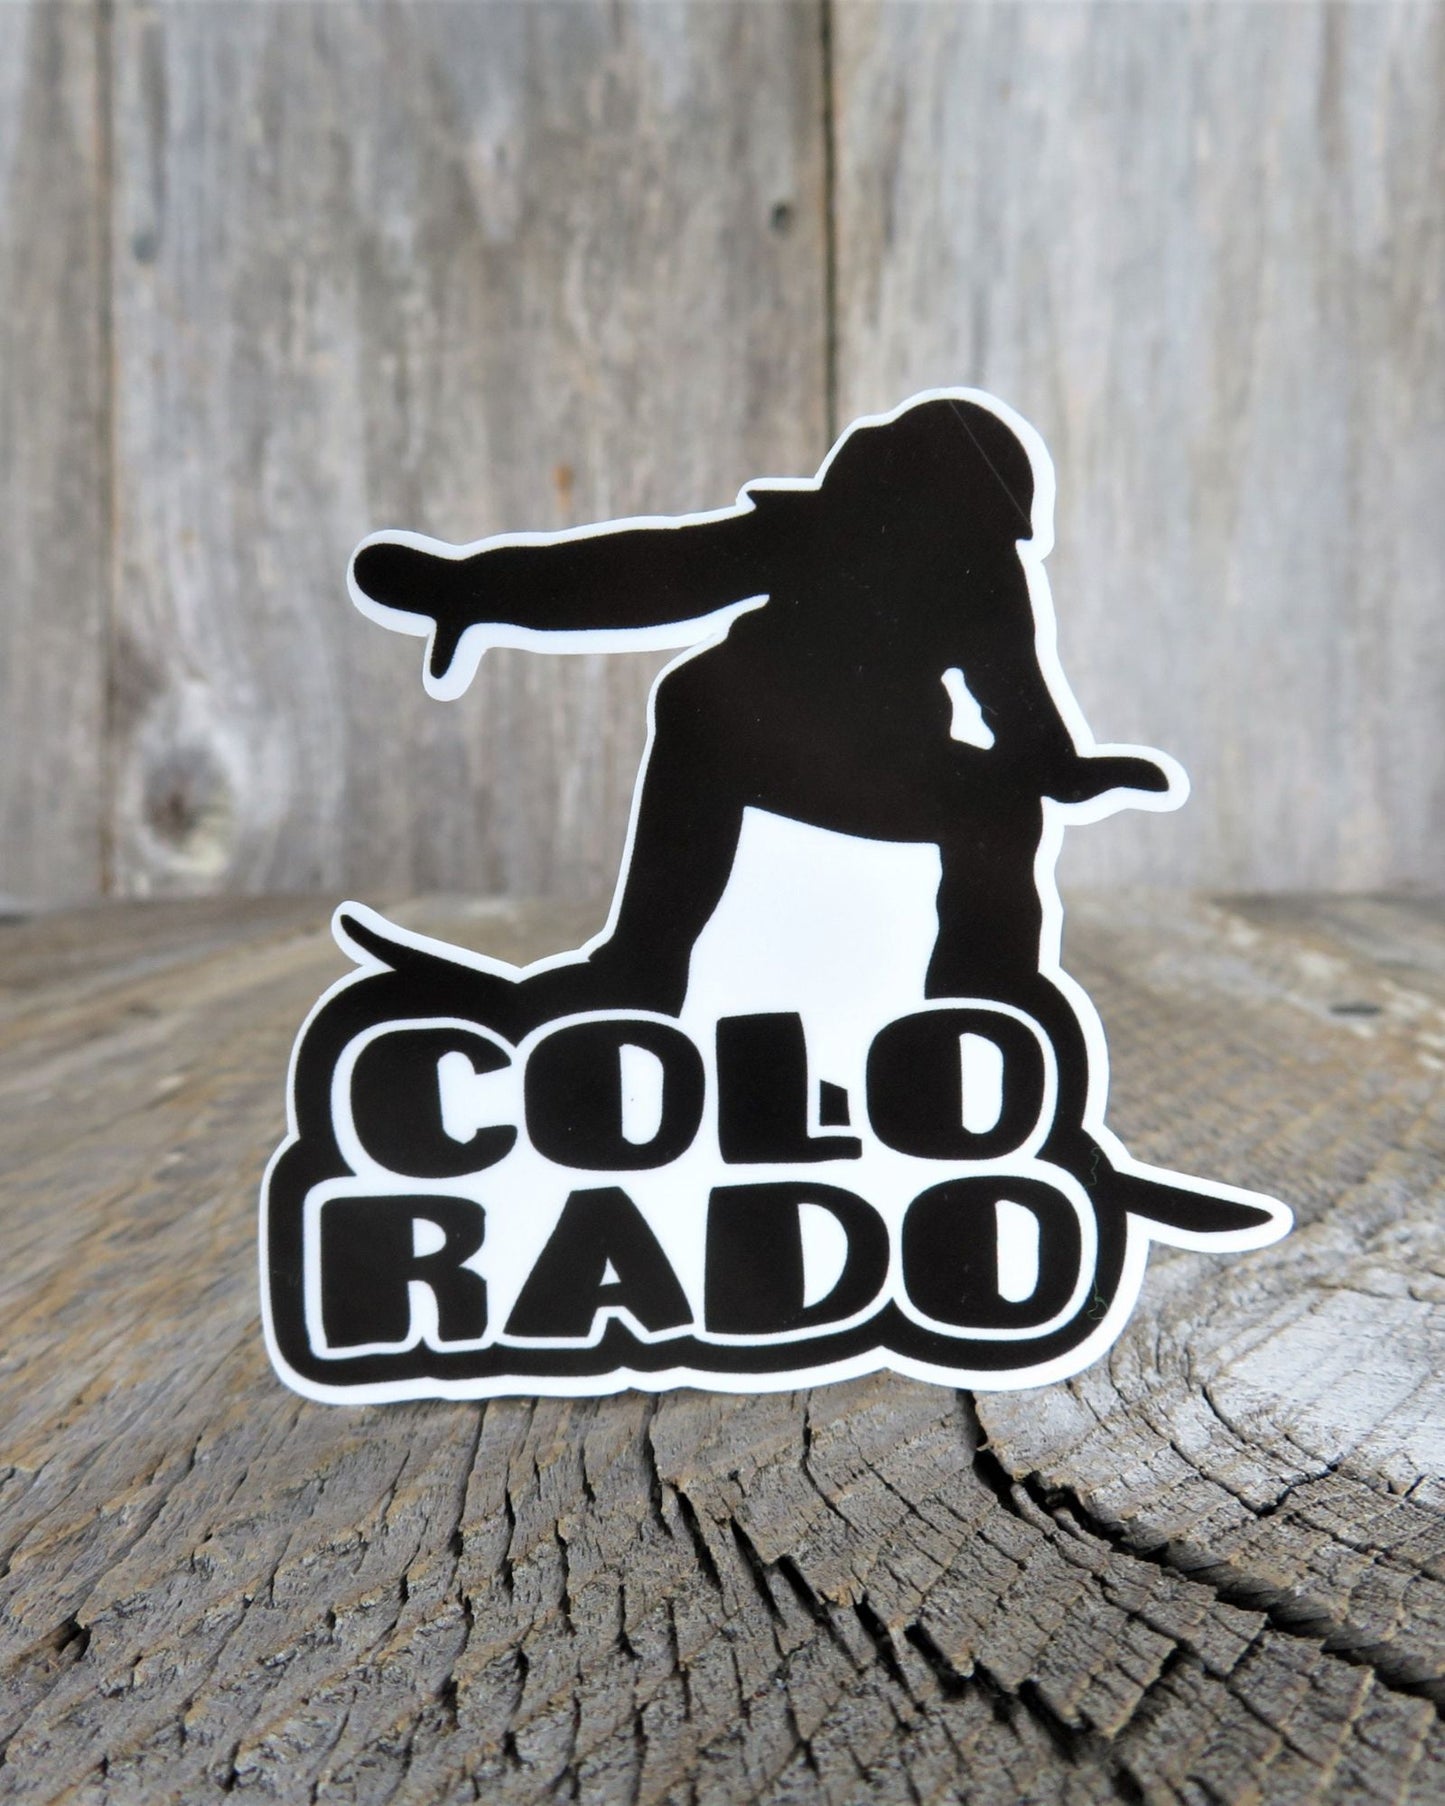 Colorado Snowboarding Silhouette Sticker Block Letters Outdoor Ski Winter Sports Souvenir Waterproof Travel Water Bottle Laptop